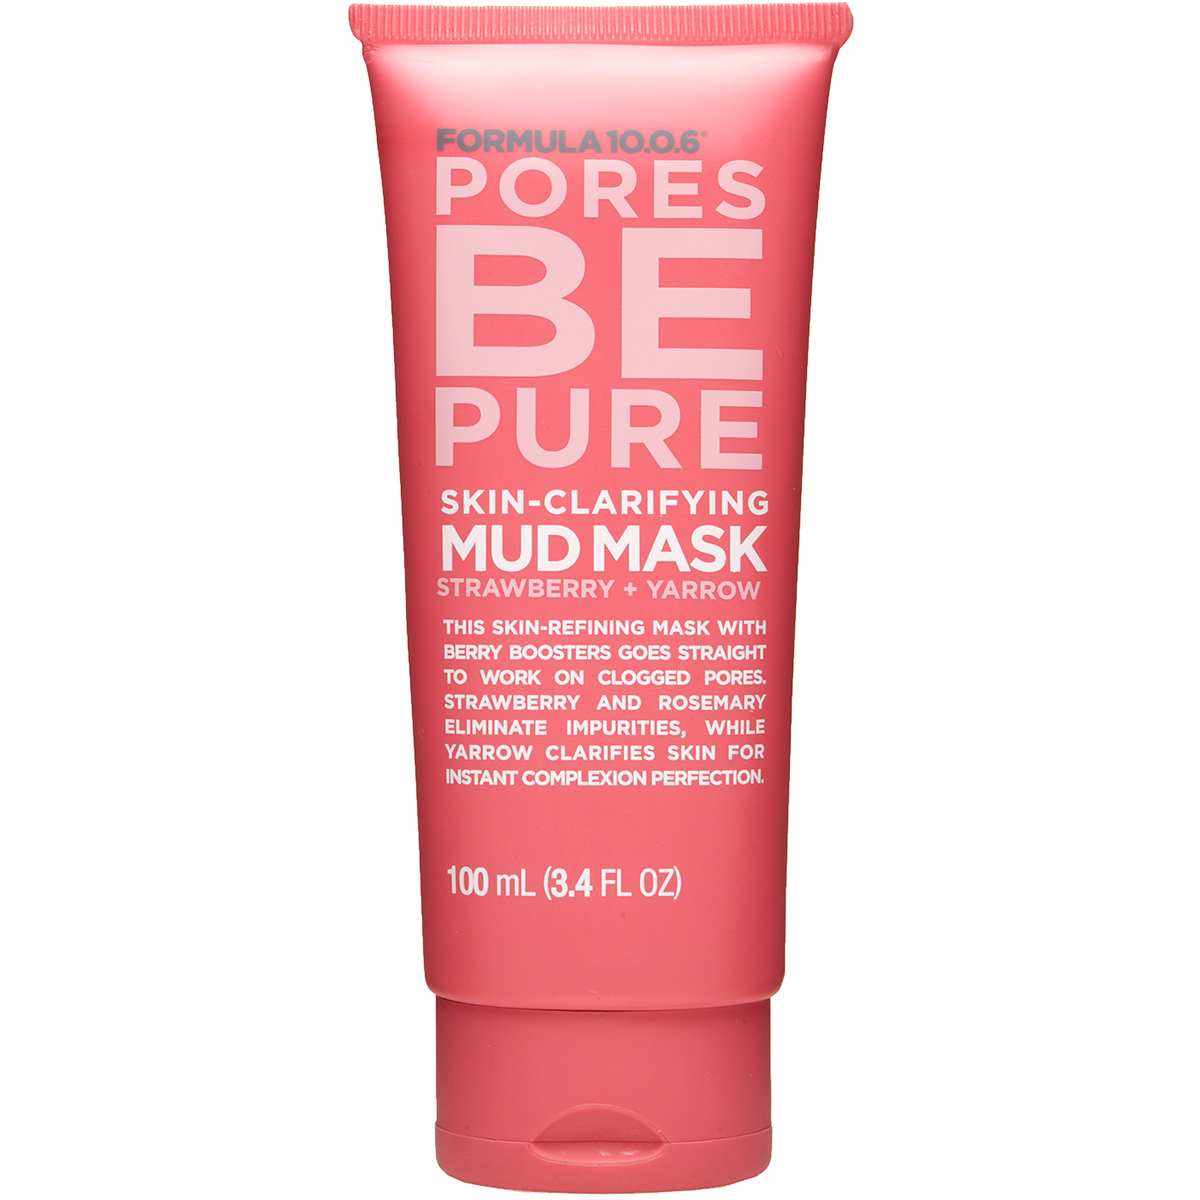 Formula 10.0.6 Pores Be Pure Skin-Clarifying Mud Mask, 100 ml Formula 10.0.6 Ansiktsmask